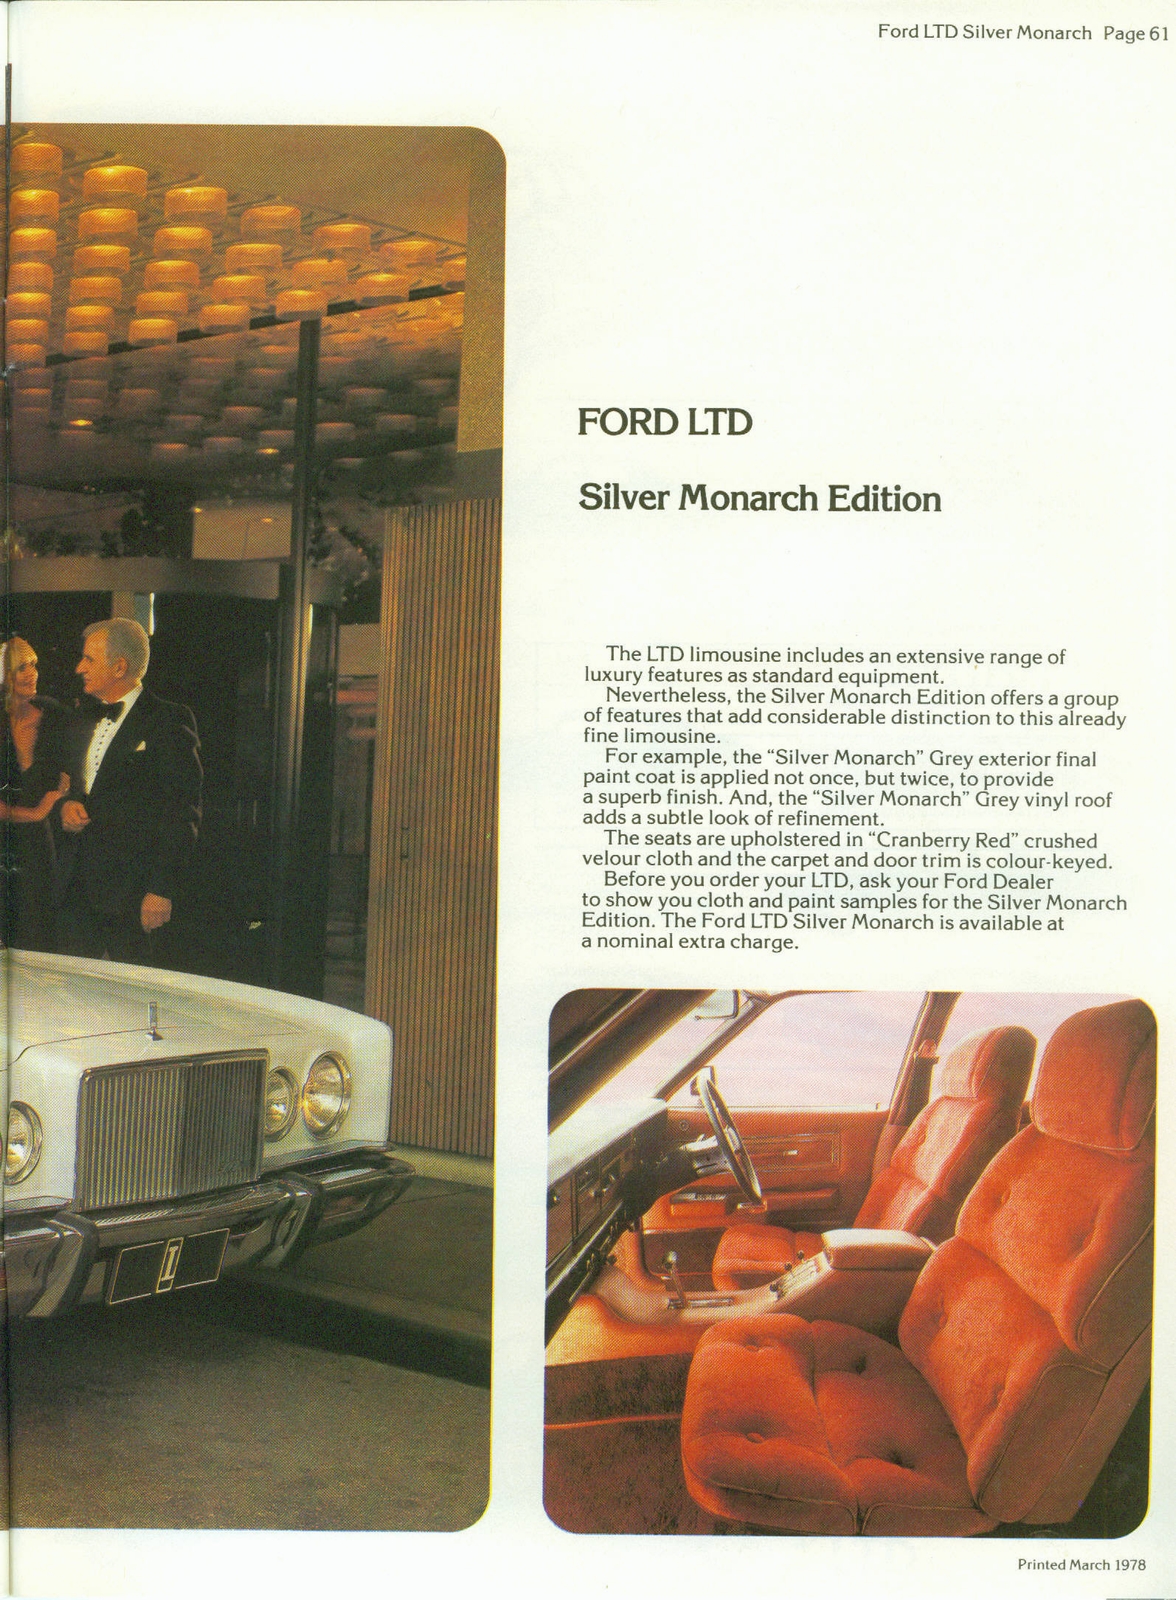 n_1978 Ford Australia-61.jpg